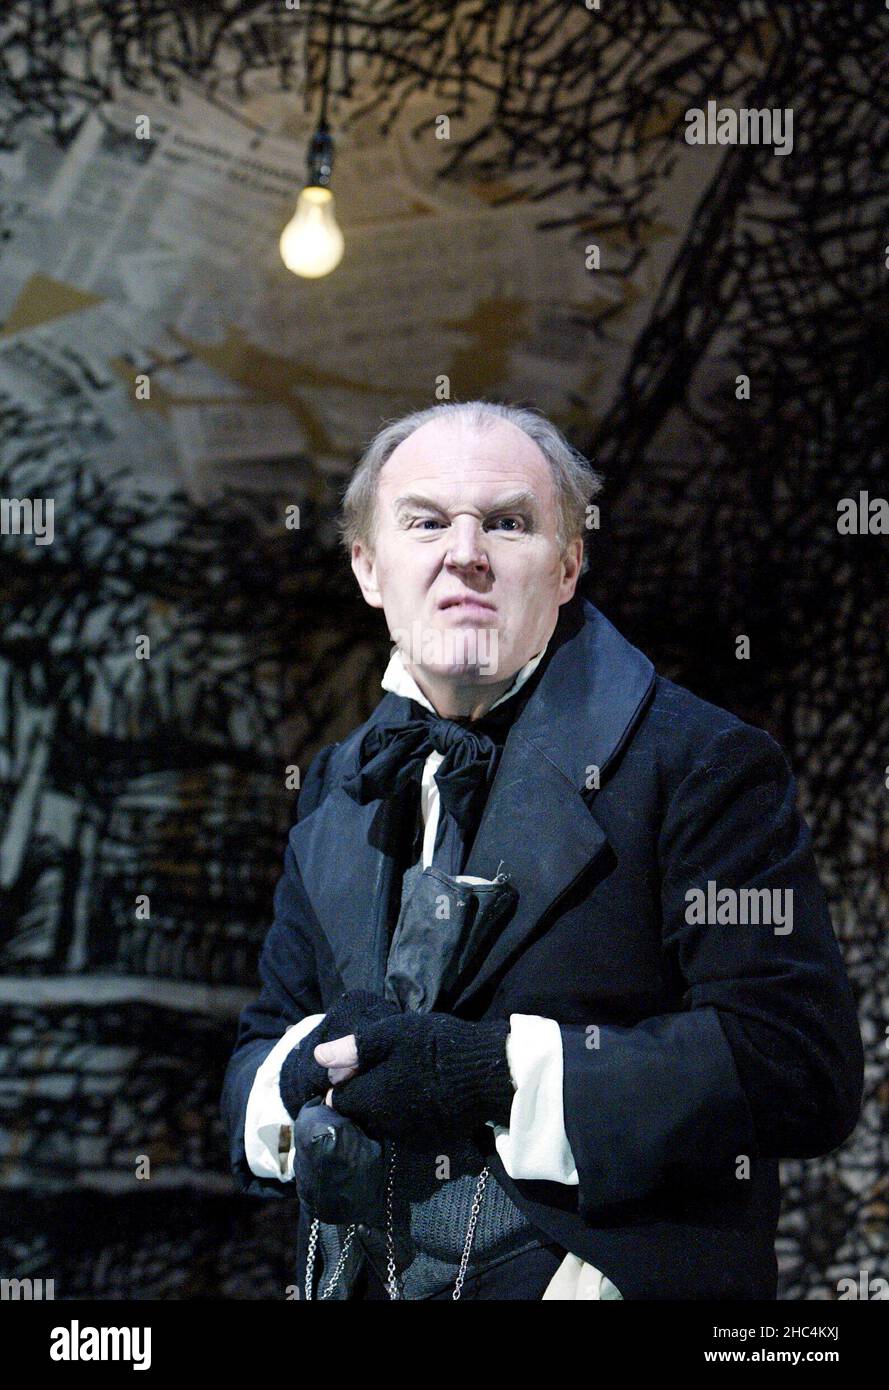 Tim Pigott-Smith (Ebenezer Scrooge) in Un CAROL DI NATALE di Charles Dickens al Teatro Lirico Hammersmith, Londra W6 03/12/2002 adattato e diretto da Neil Bartlett Foto Stock